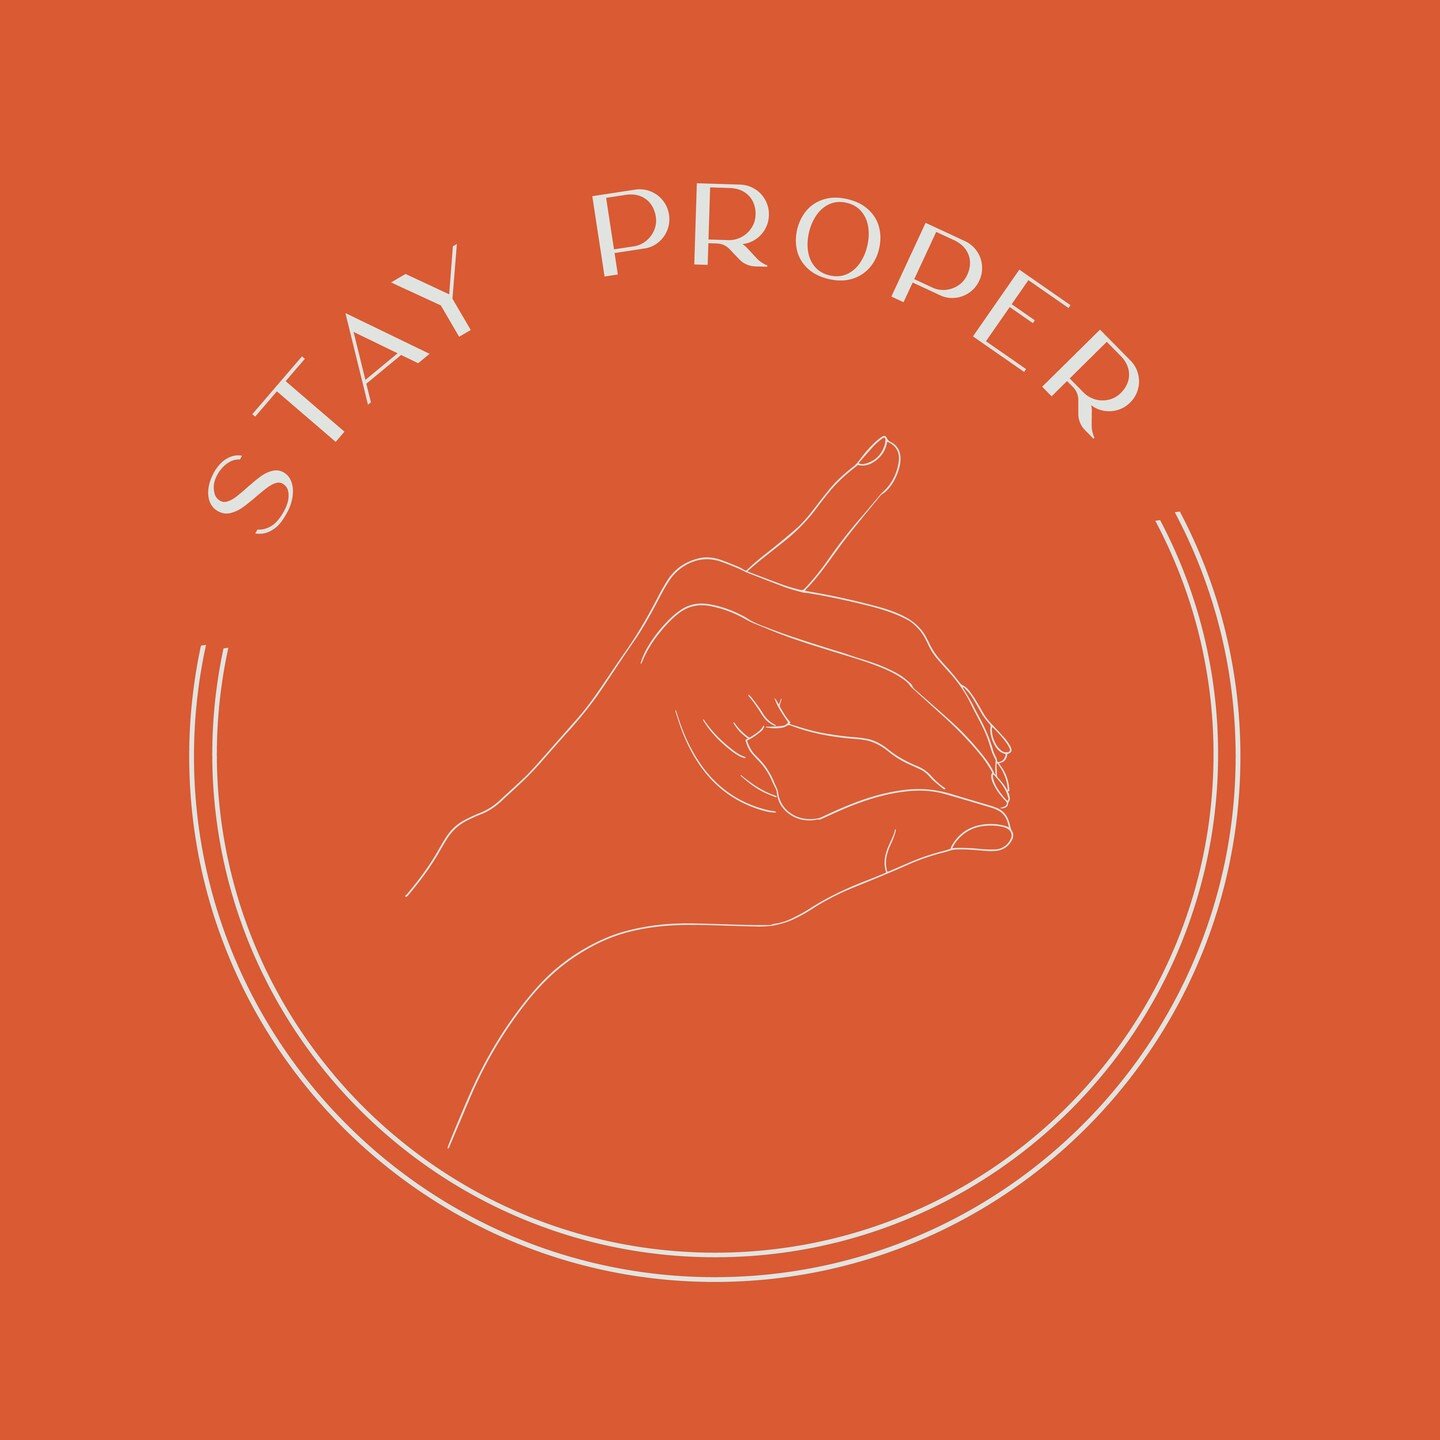 #StayProper